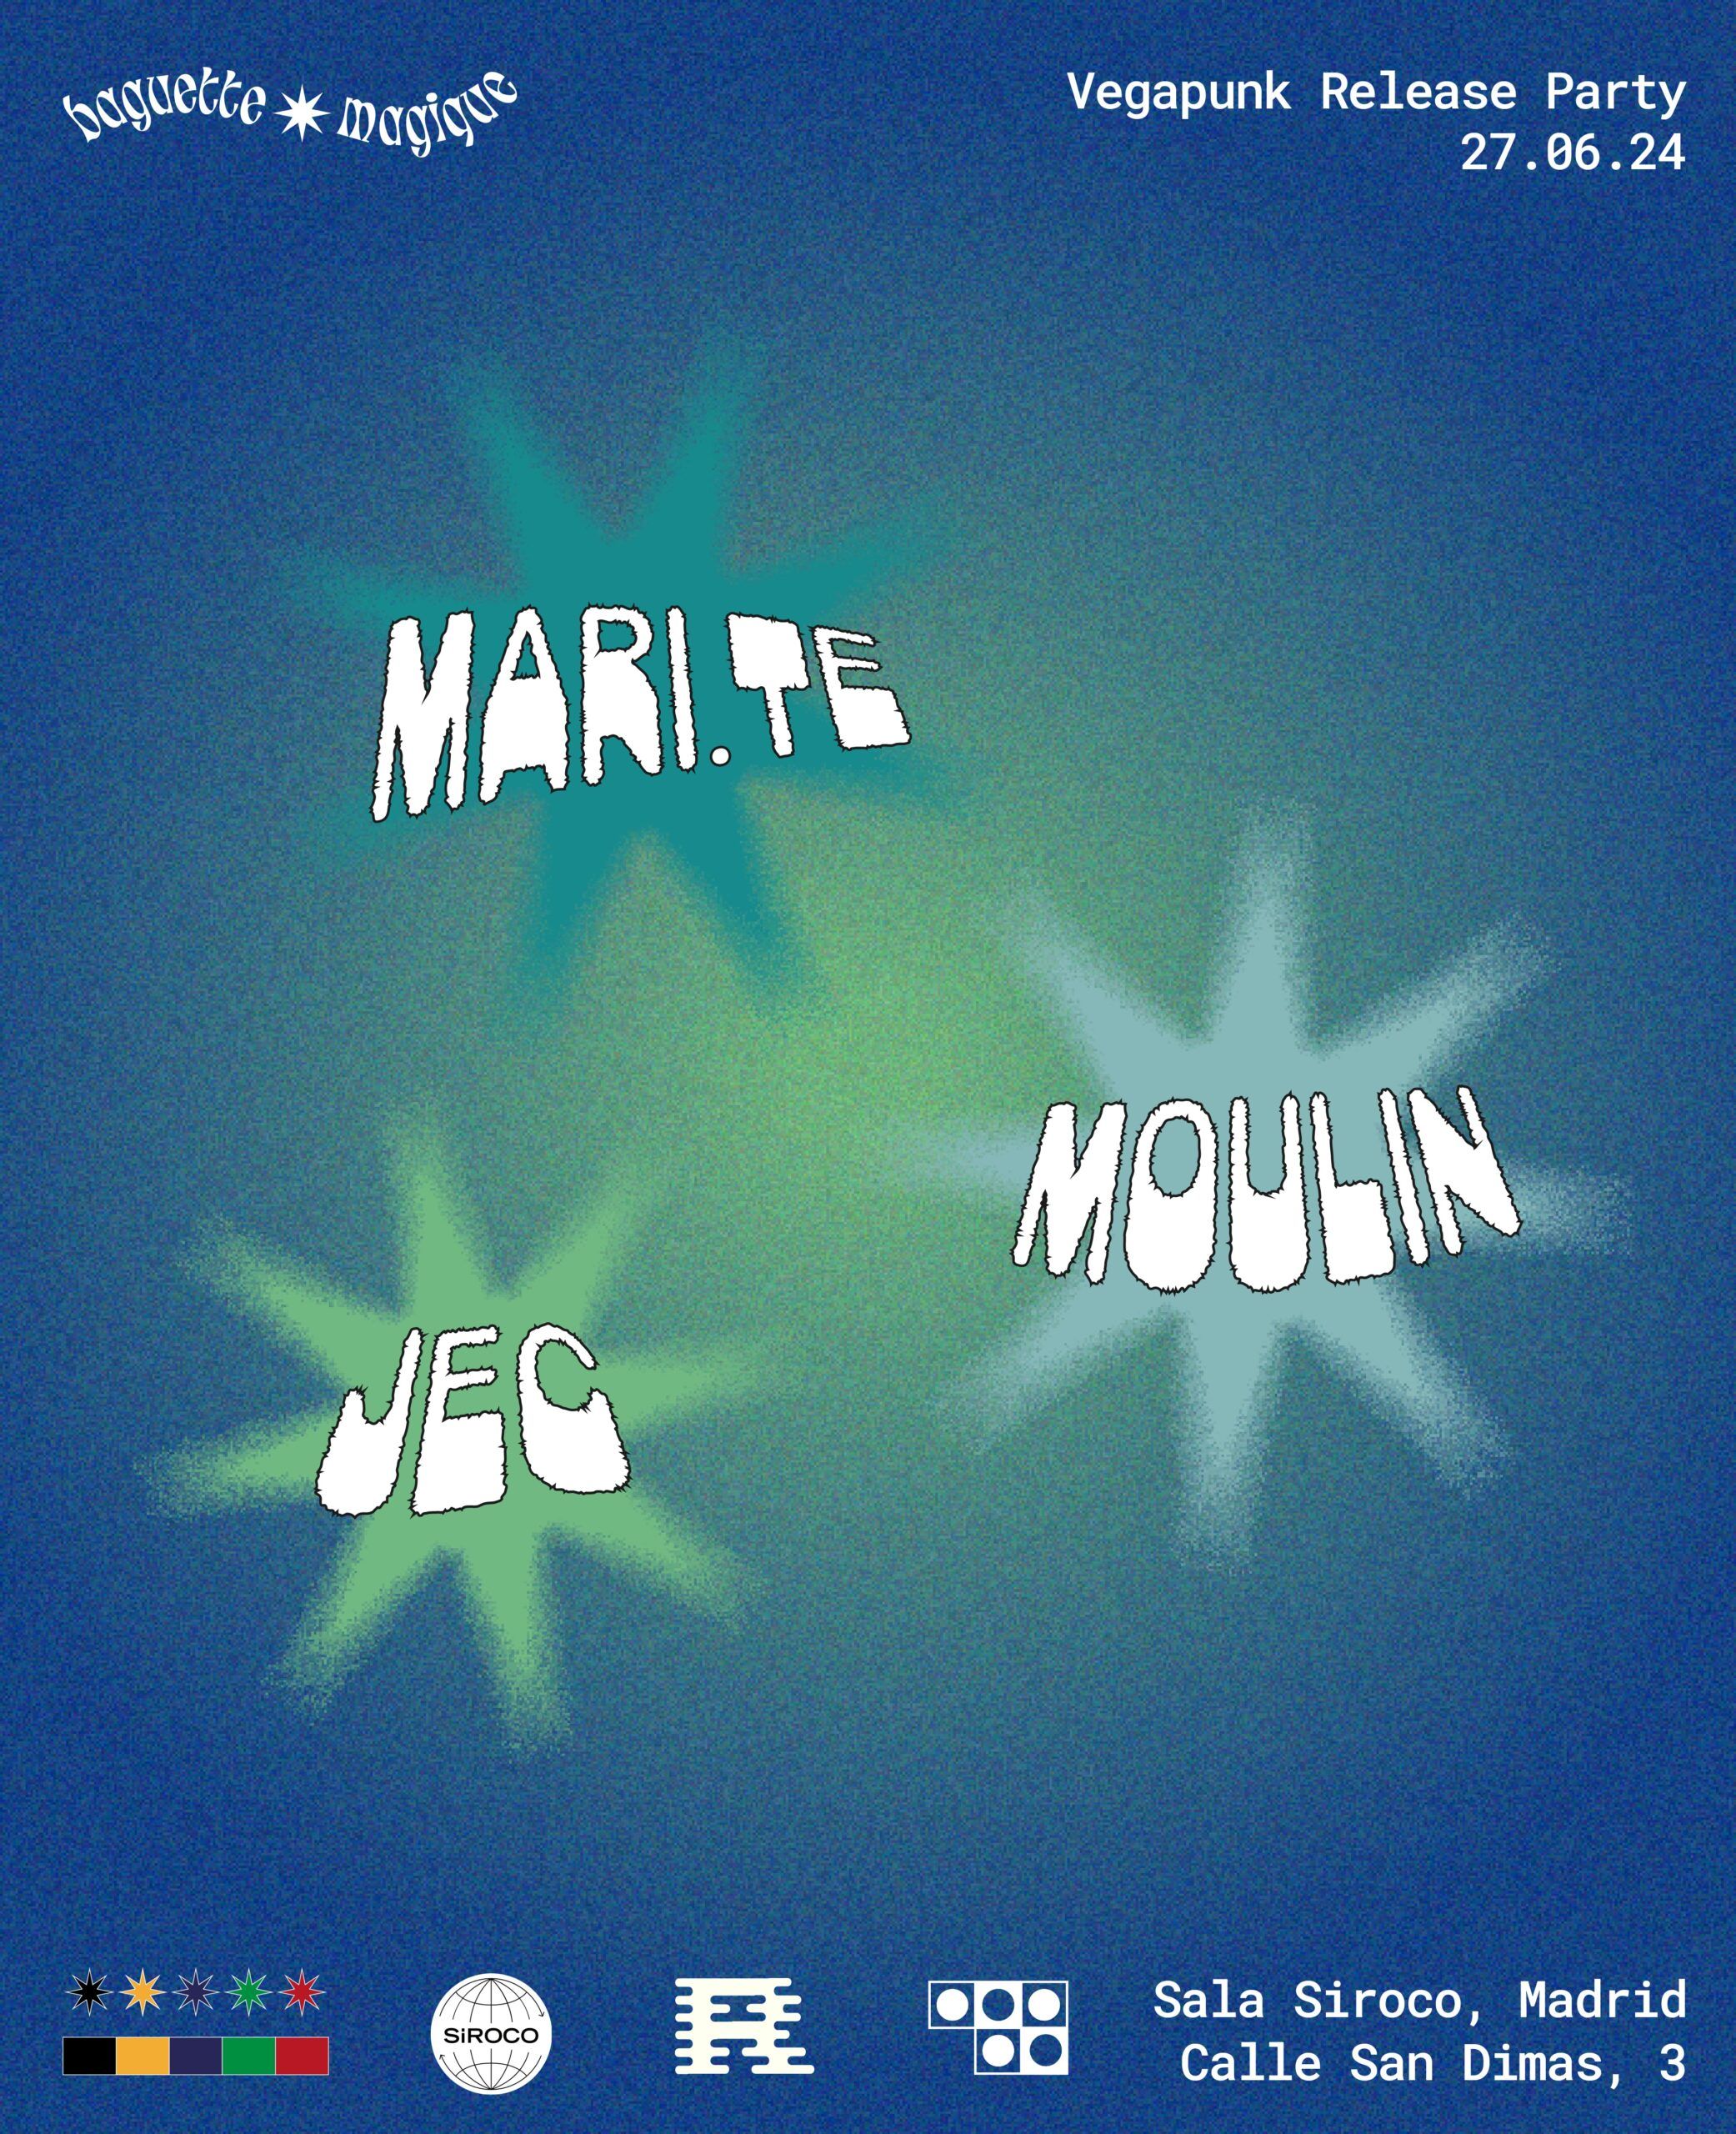 Baguette Magique Records  “Vegapunk” Release Party : Marite (Tresydos) + Moulin (Baguette Magique) + JEC